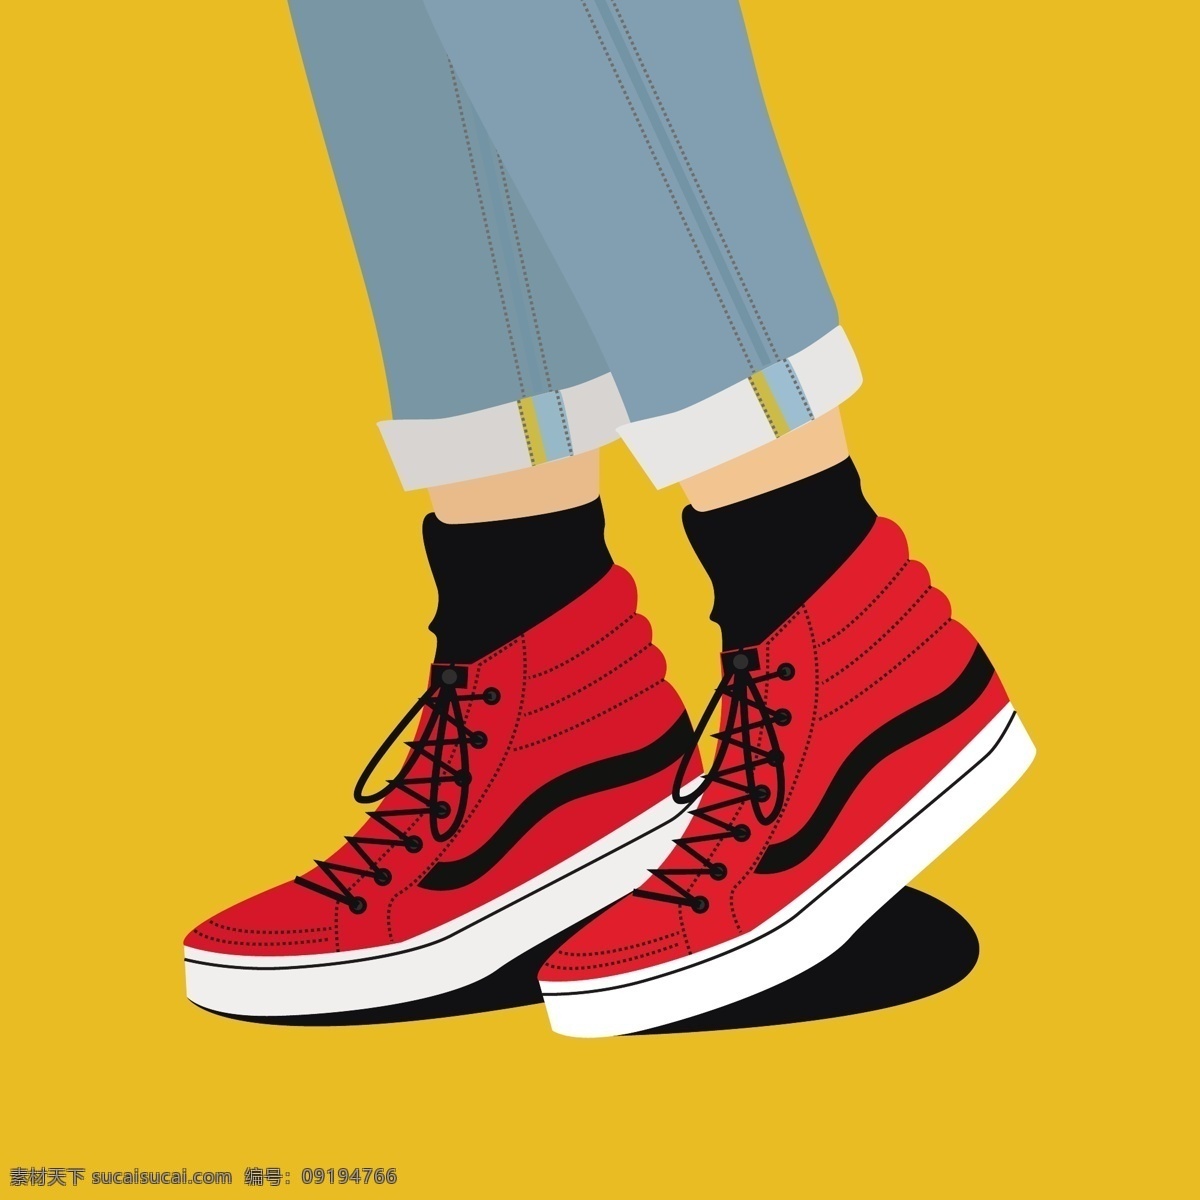 红色鞋子 黄色背景 裤子 牛仔裤 矢量素材 鞋子 靴子